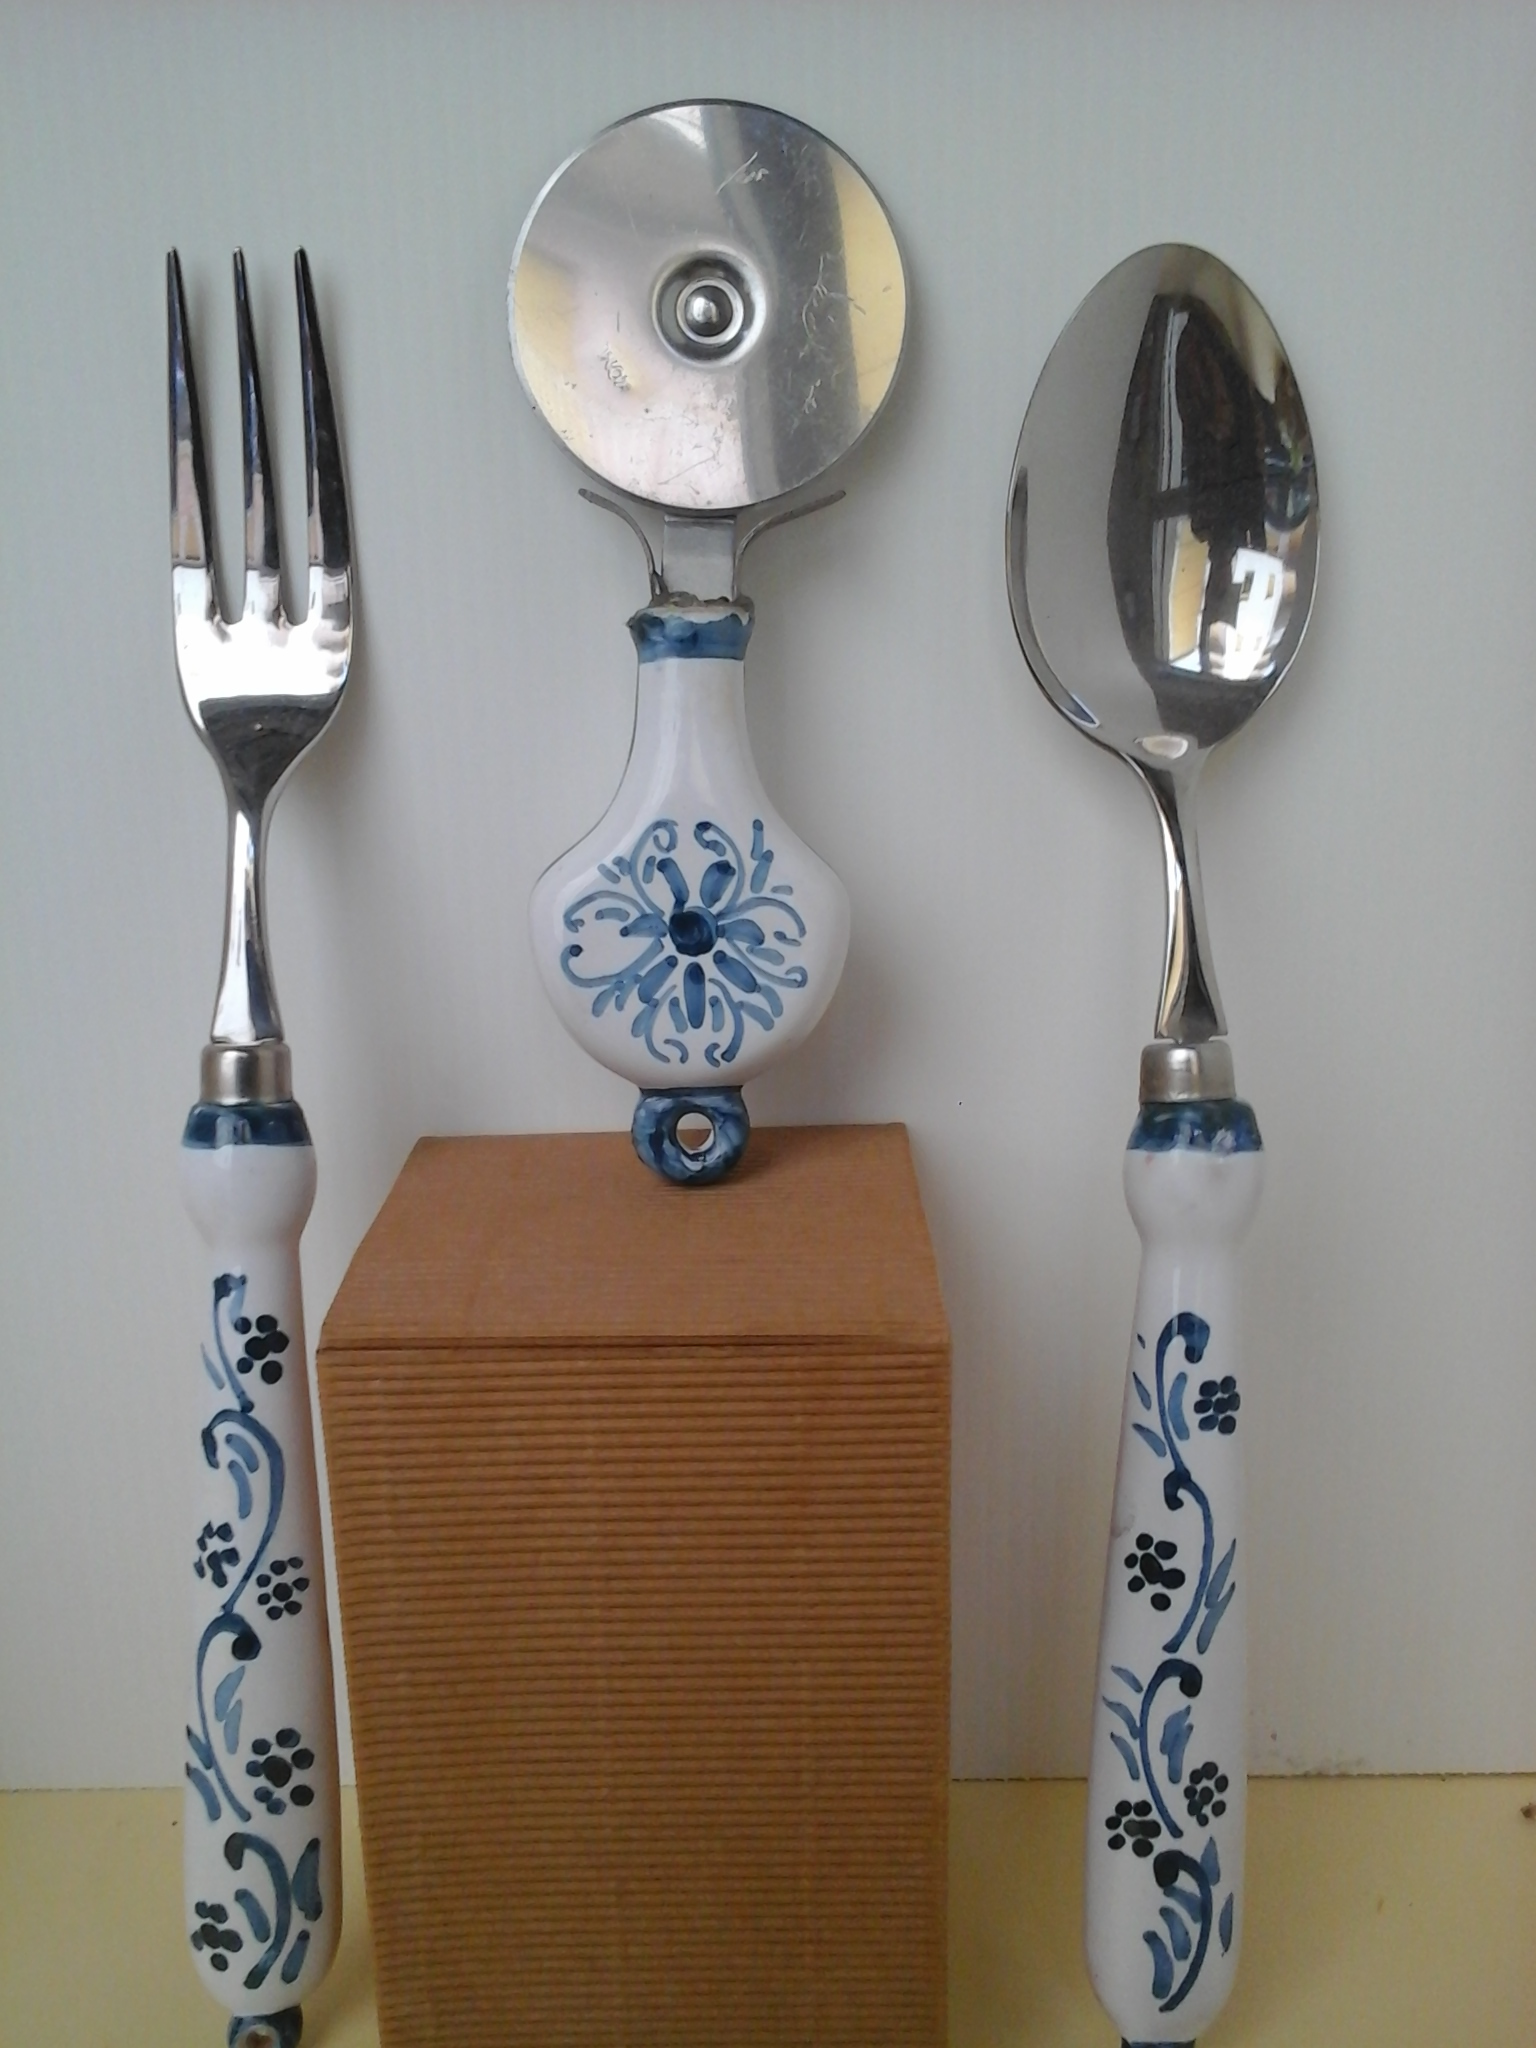 Forchetta, rotella tagliapasta e cucchiaia, colori bianco ed azzurro